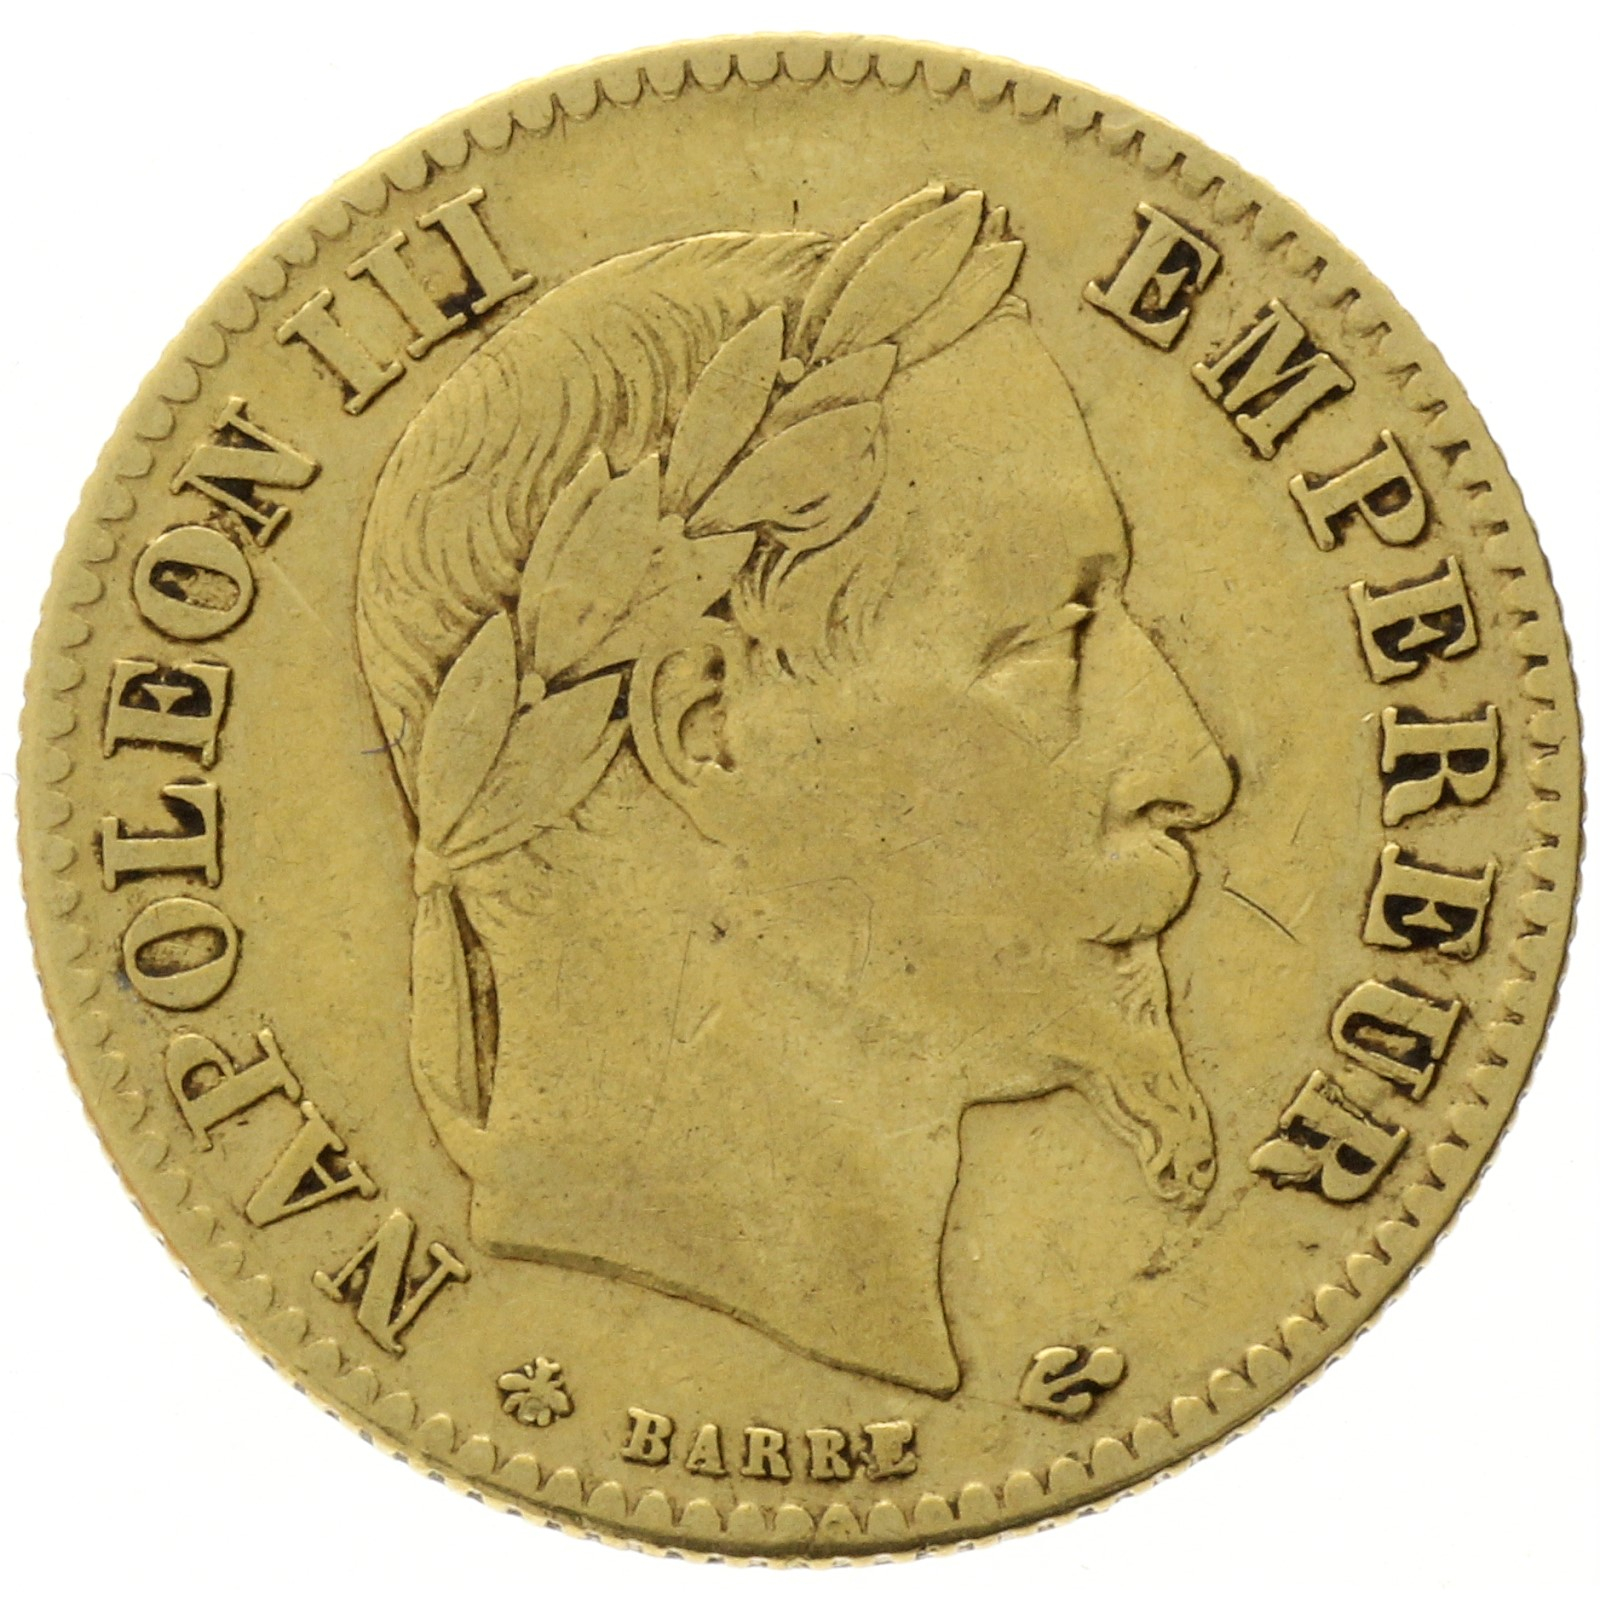 France - 10 francs - 1868 - A - Napoleon III 